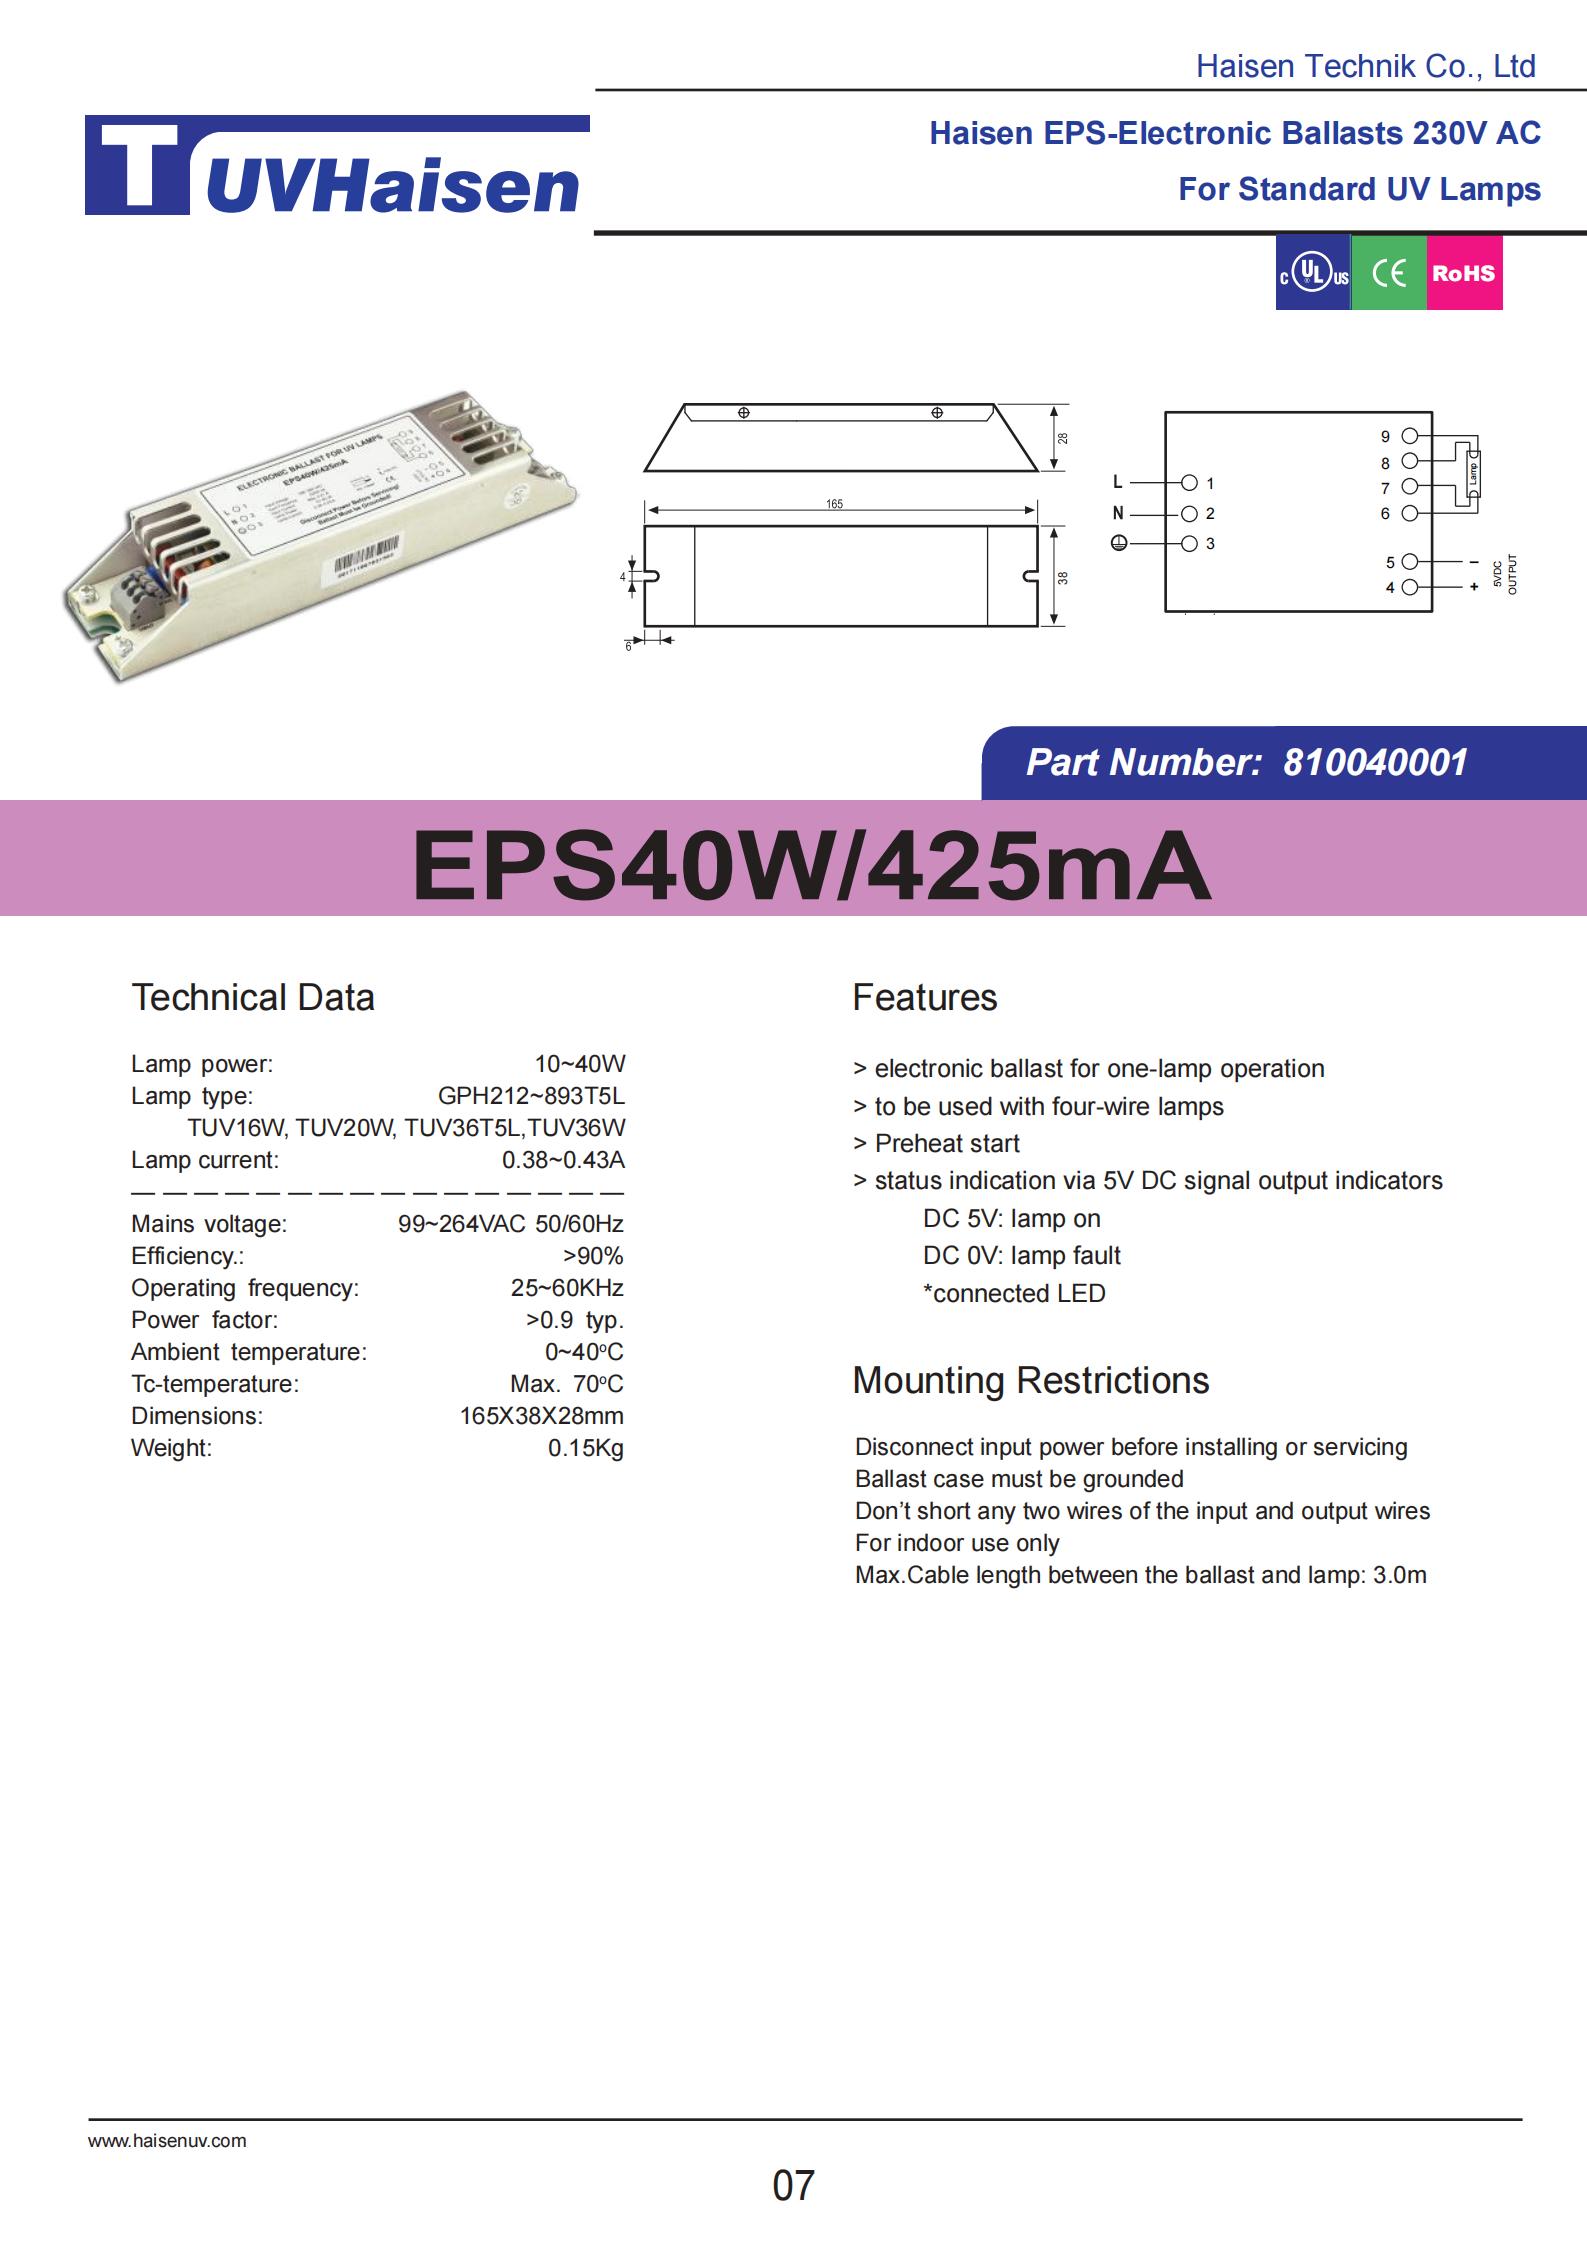  ultravoilet ballast EPS40W/425mA FOR UV LIGHTS